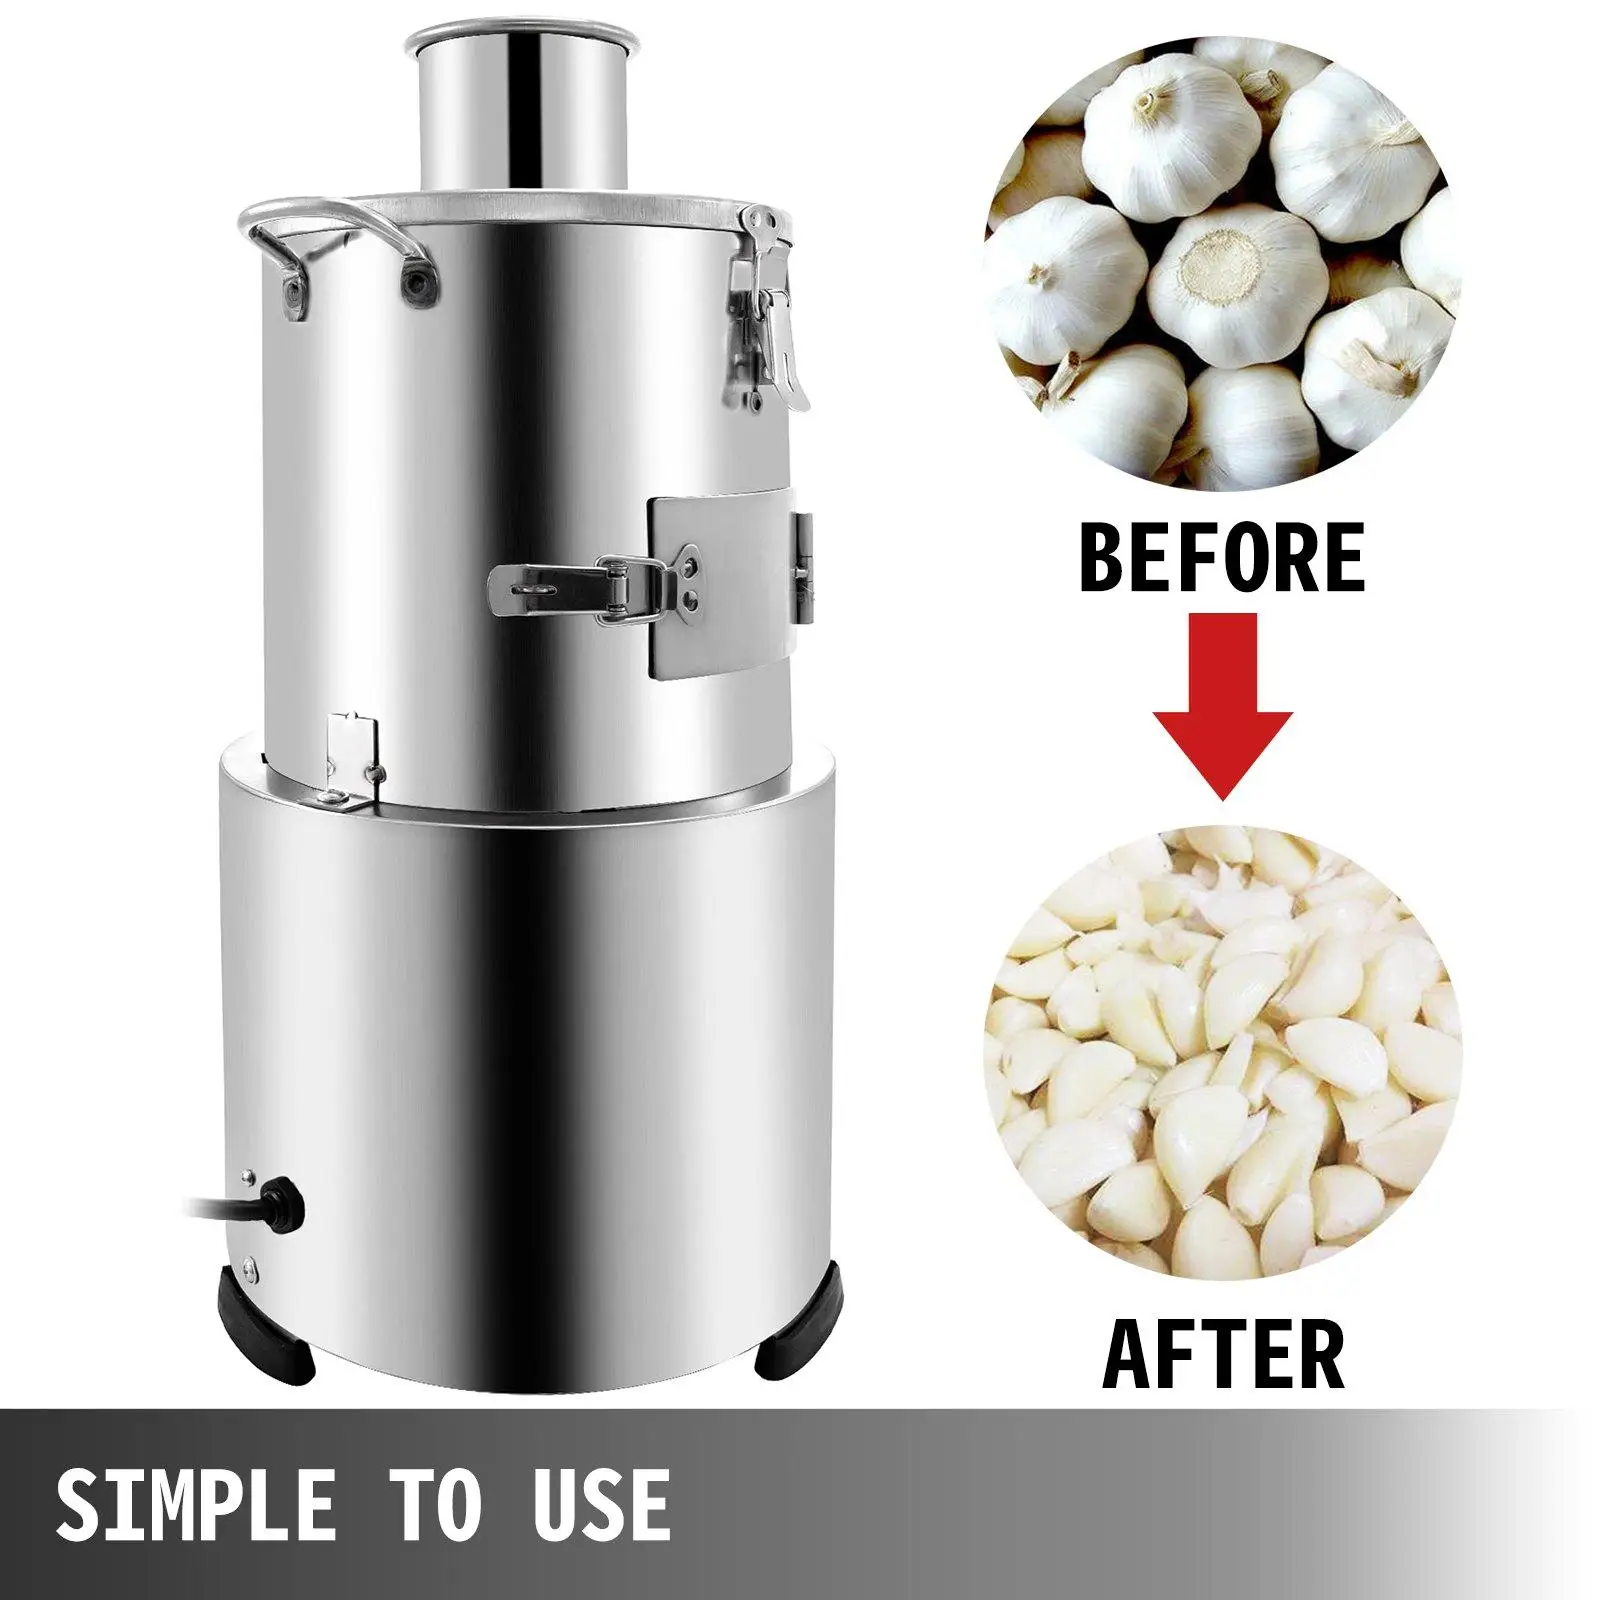 Techtongda Electric Garlic Peeler Machine for Dry Whole Garlic